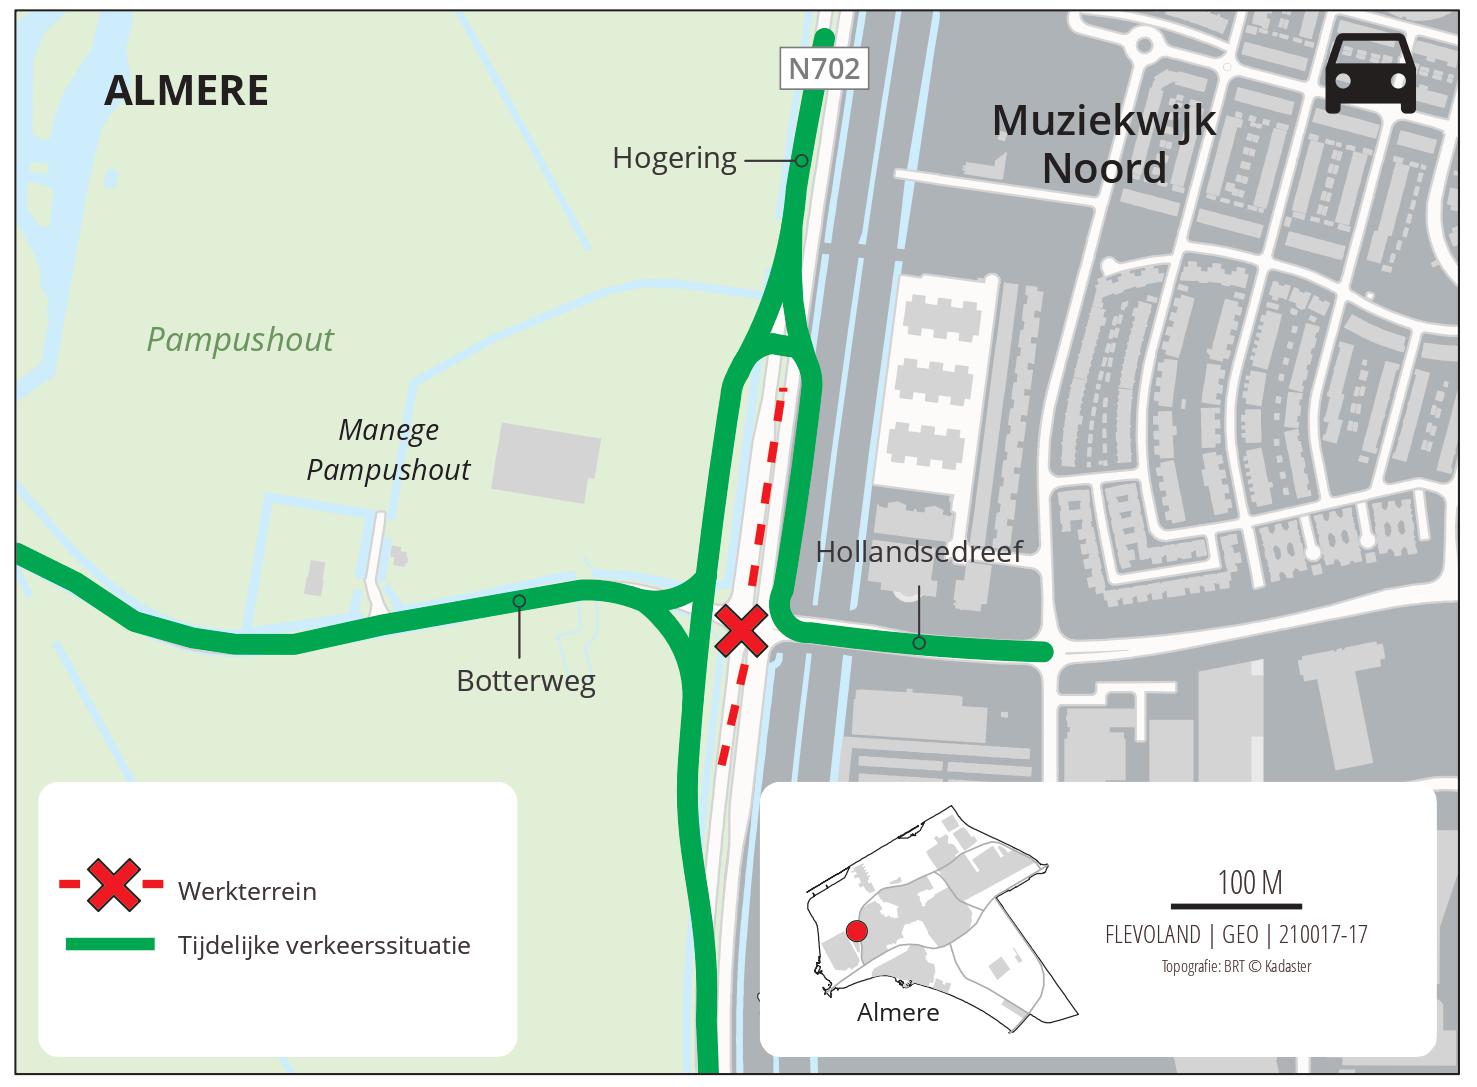 Tijdelijke verkeerssituatie voor de Hollandsedreef en de Botterweg (Pampusdreef)